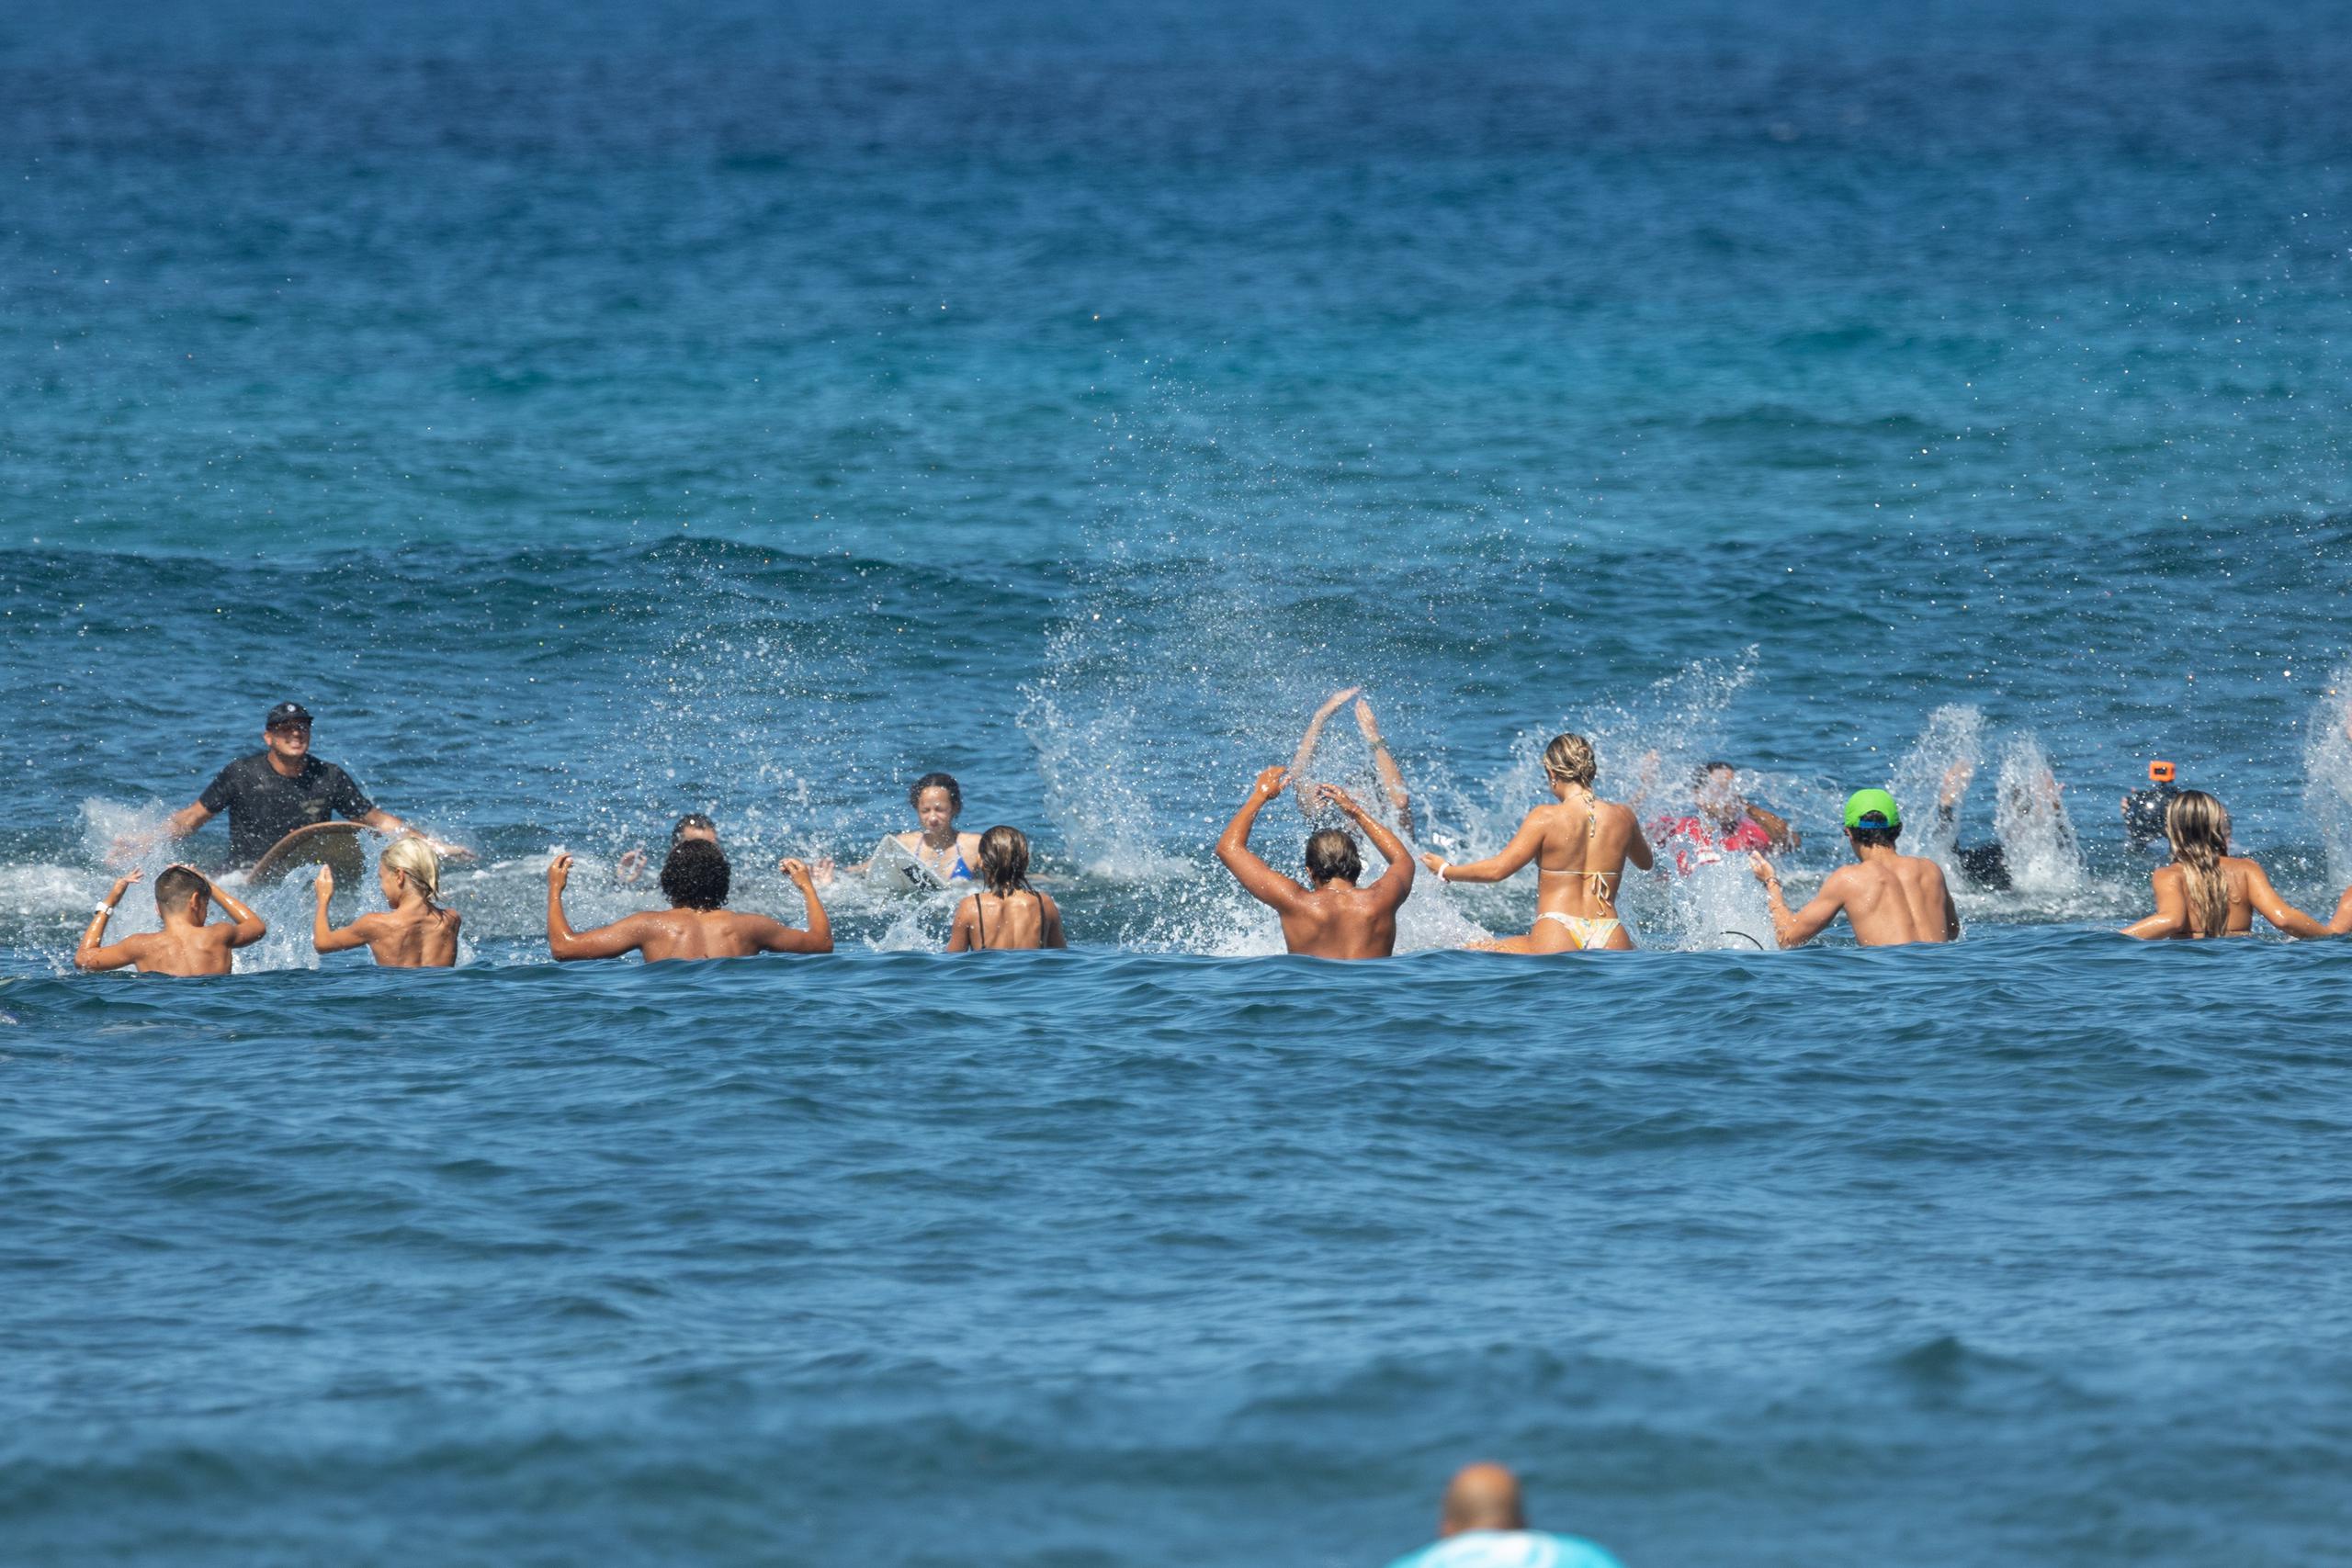 Como parte de la tercera parada, los surfers hacen el tradicional círculo para honrar a uno de los suyos, Juan García González, conocido en el ambito del surfing como 'Kiko Rabia' quien murio recientemente en playa Los Tubos en Vega Baja.